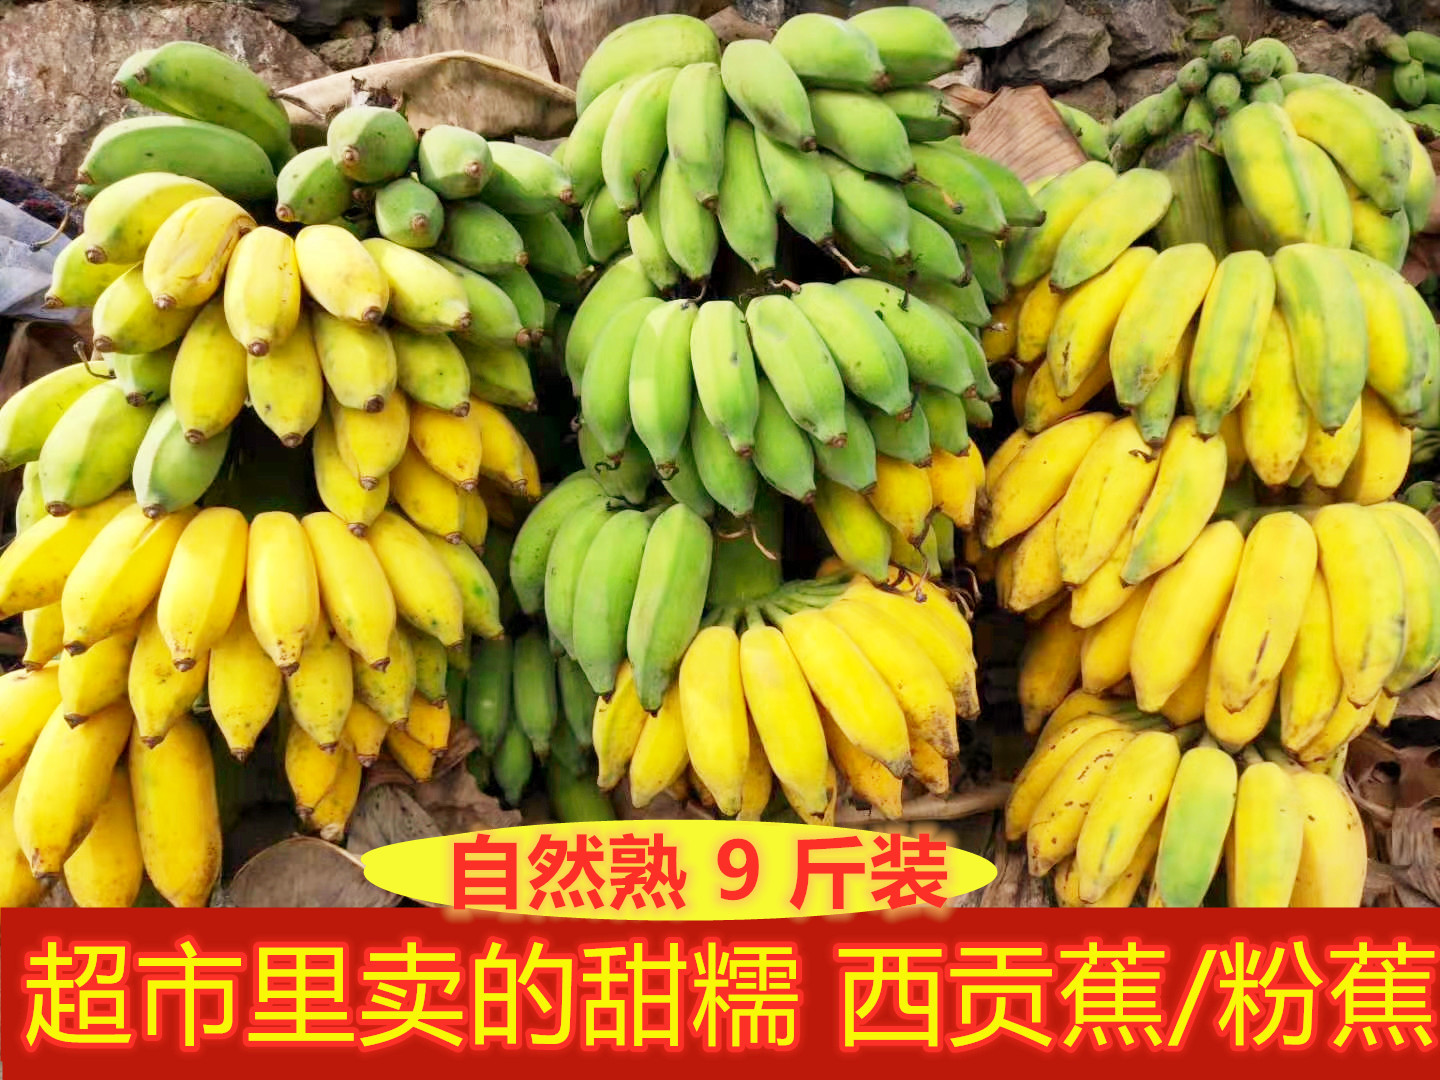 广西香蕉西贡蕉粉蕉自然熟香甜软糯新鲜水果非小米蕉整箱10斤包邮